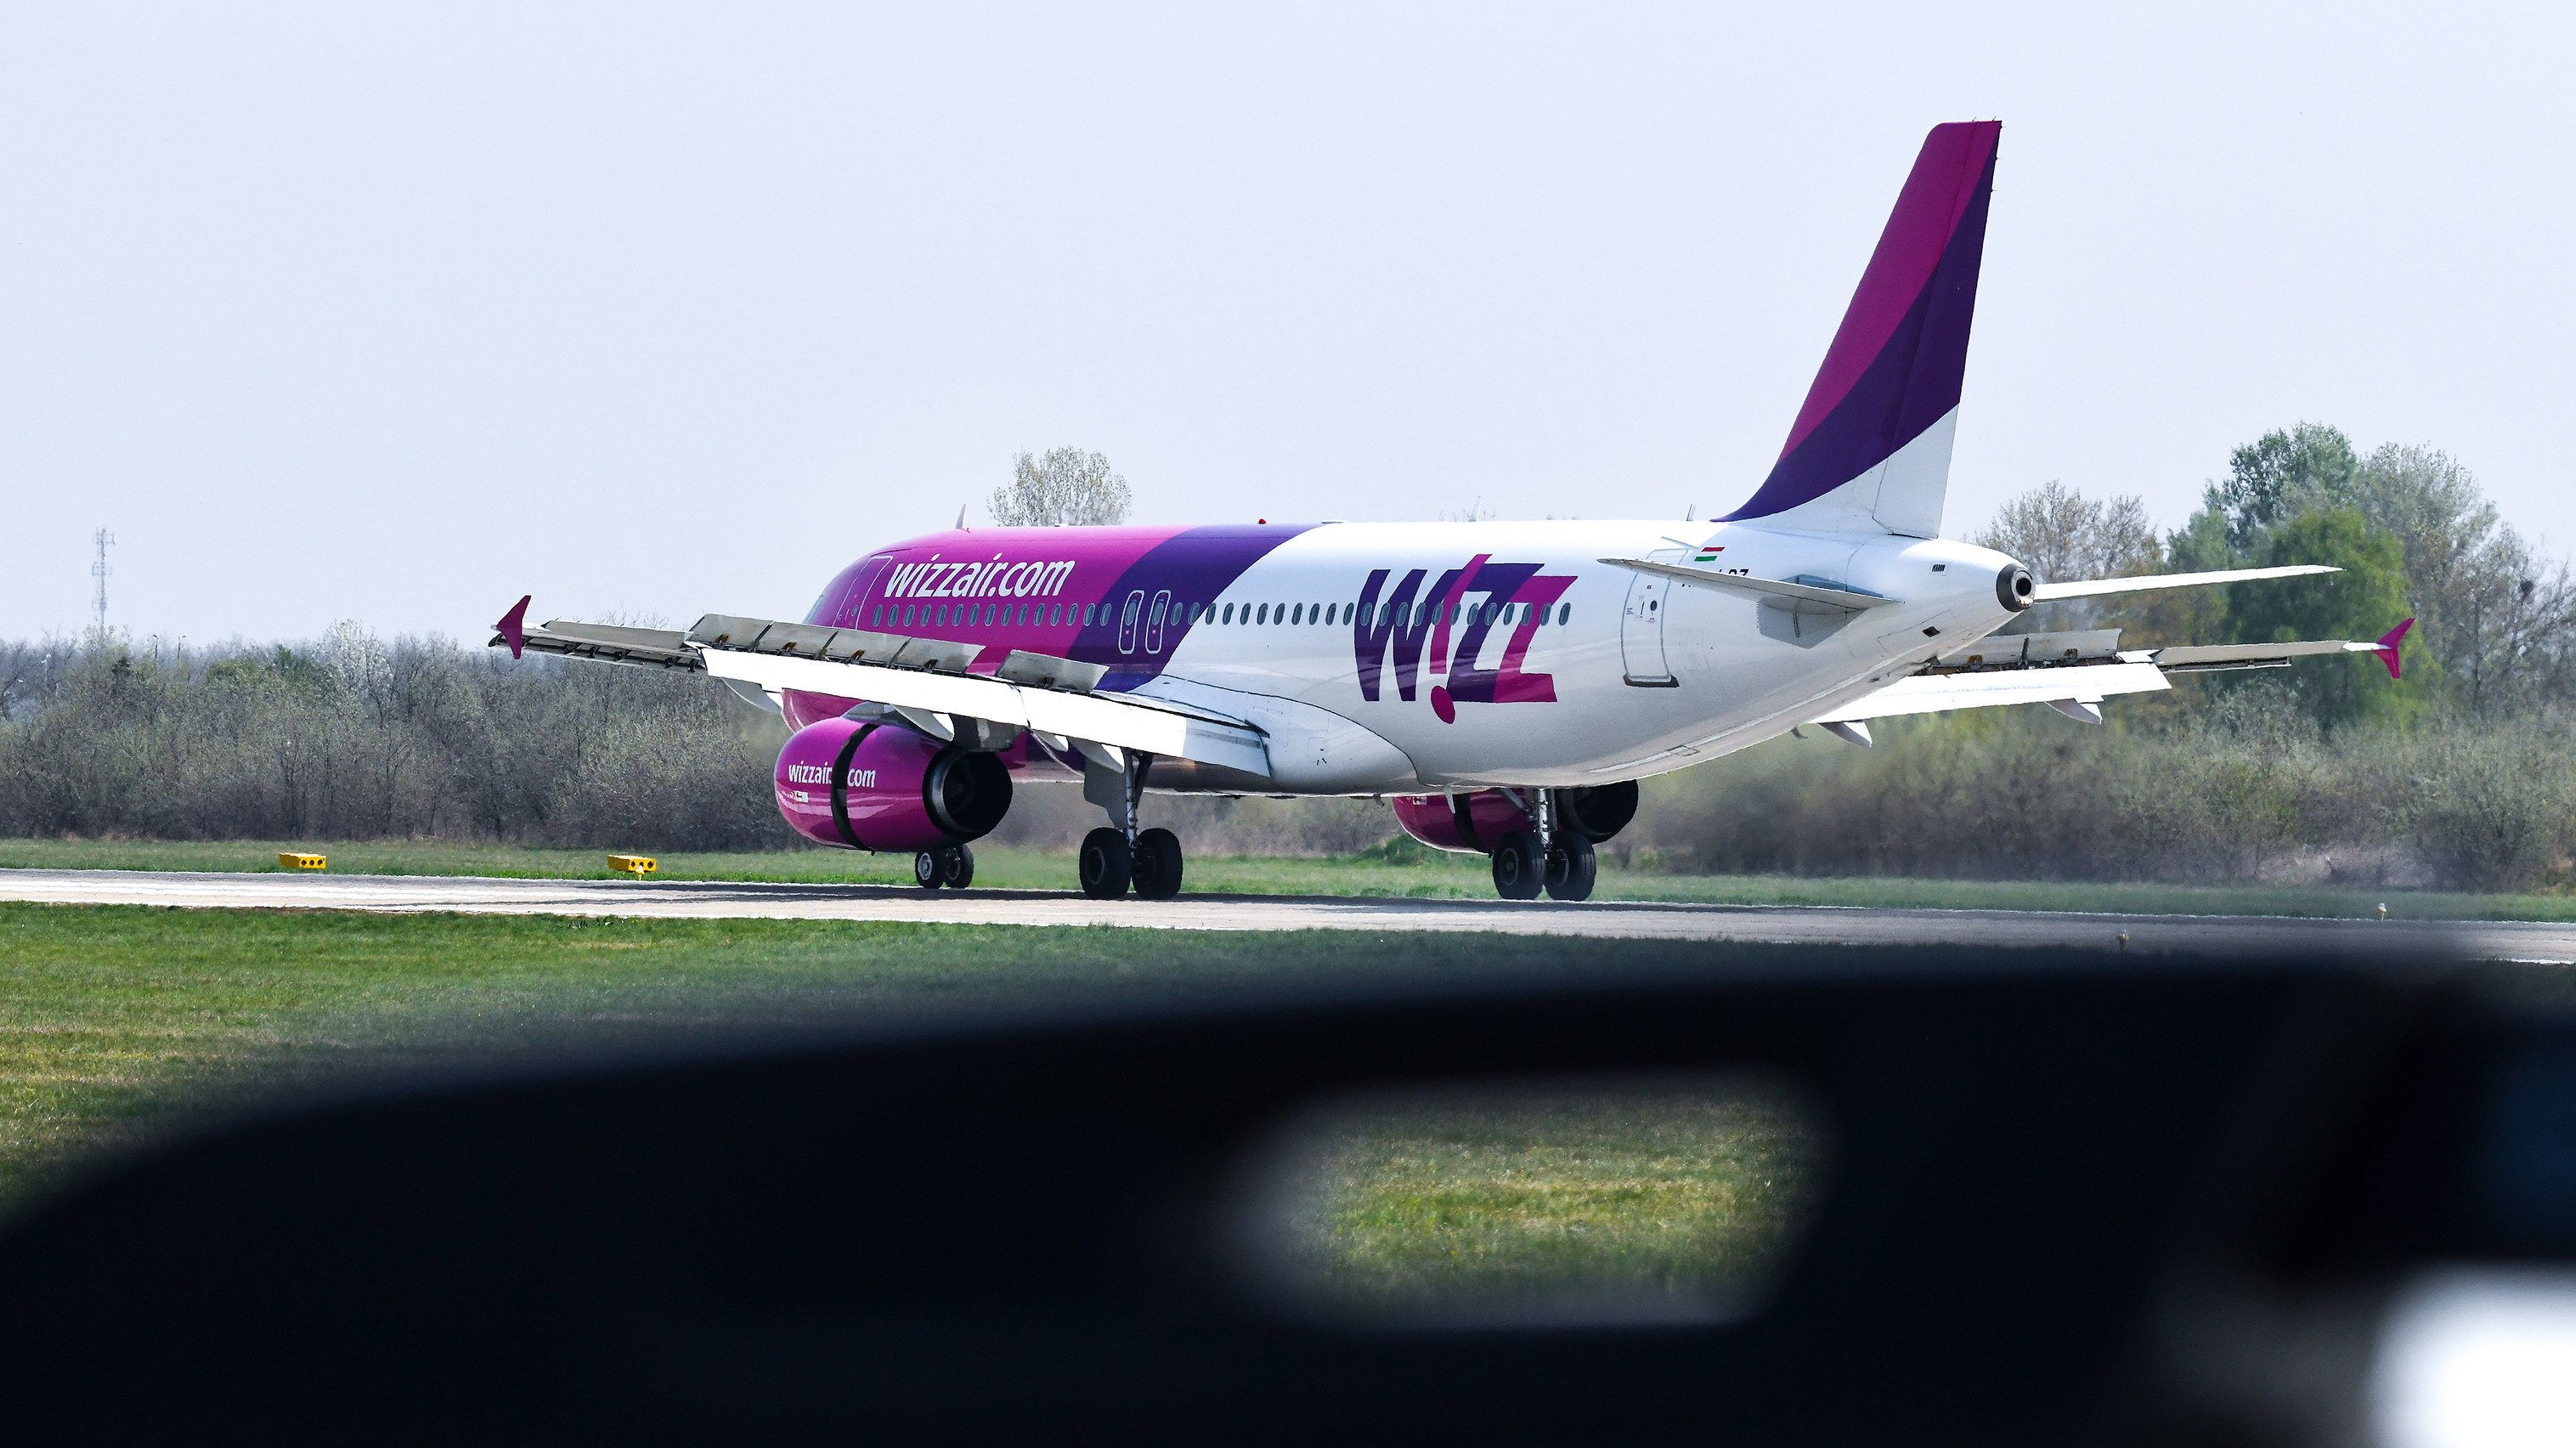 Így ritkítja járatait a Wizz Air a koronavírus miatt